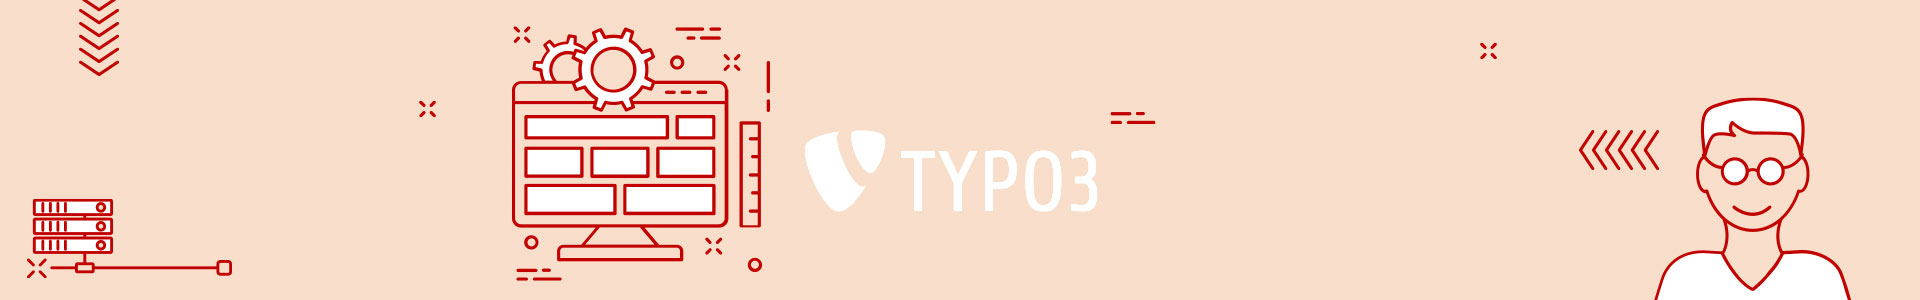 Vorteile Typo3